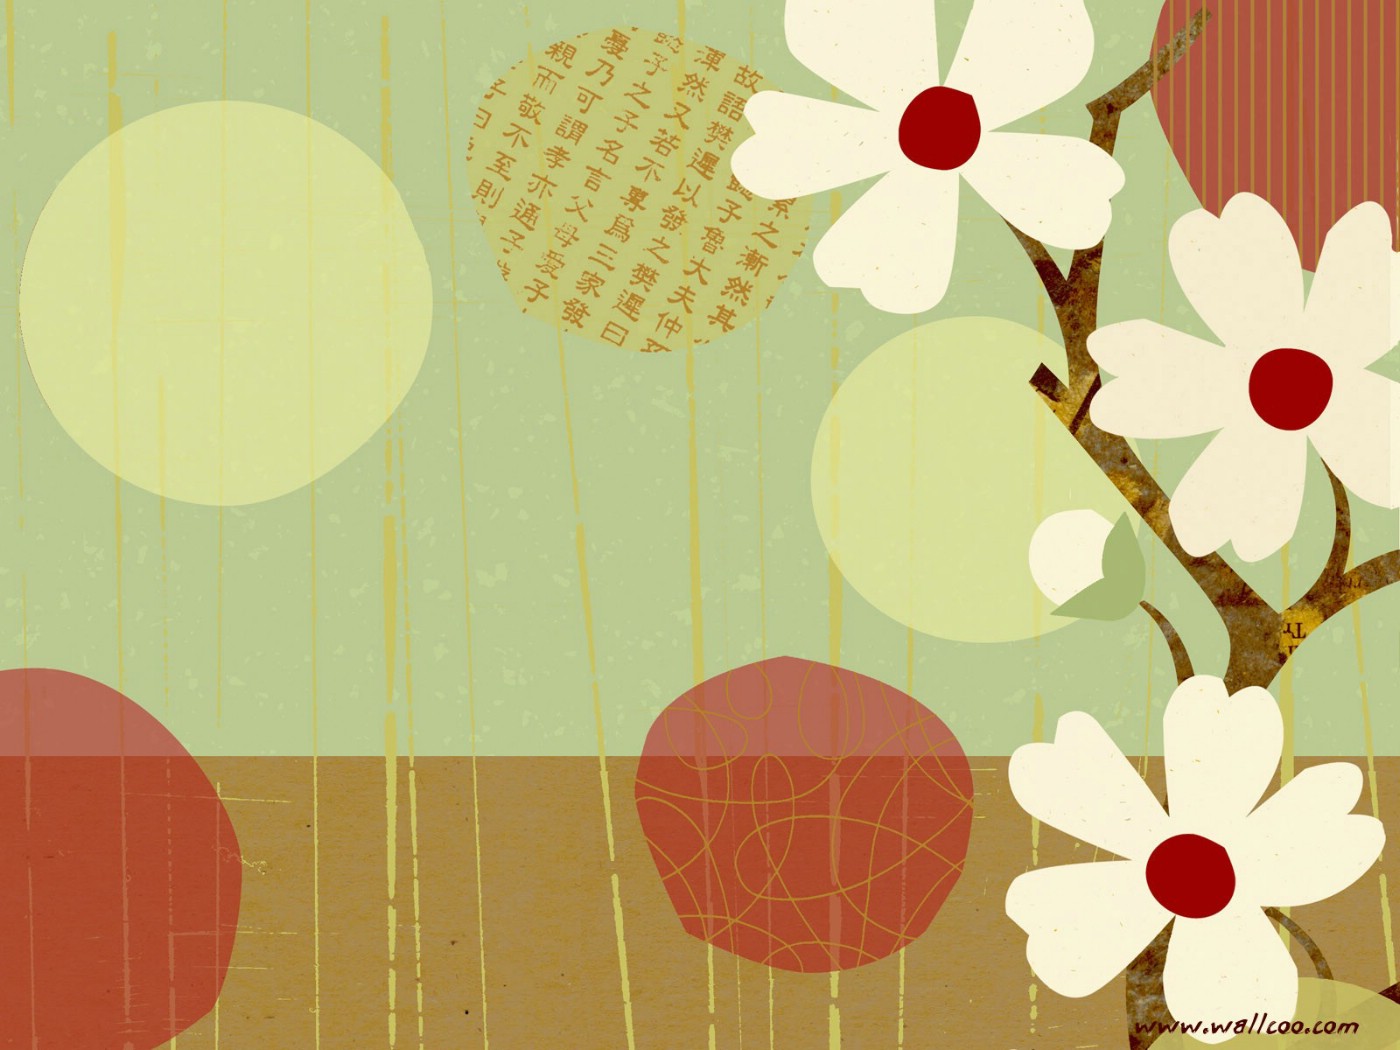 壁纸1400x1050 花卉图案设计 日本樱花插画壁纸壁纸 艺术与抽象花卉壁纸壁纸 艺术与抽象花卉壁纸图片 艺术与抽象花卉壁纸素材 花卉壁纸 花卉图库 花卉图片素材桌面壁纸